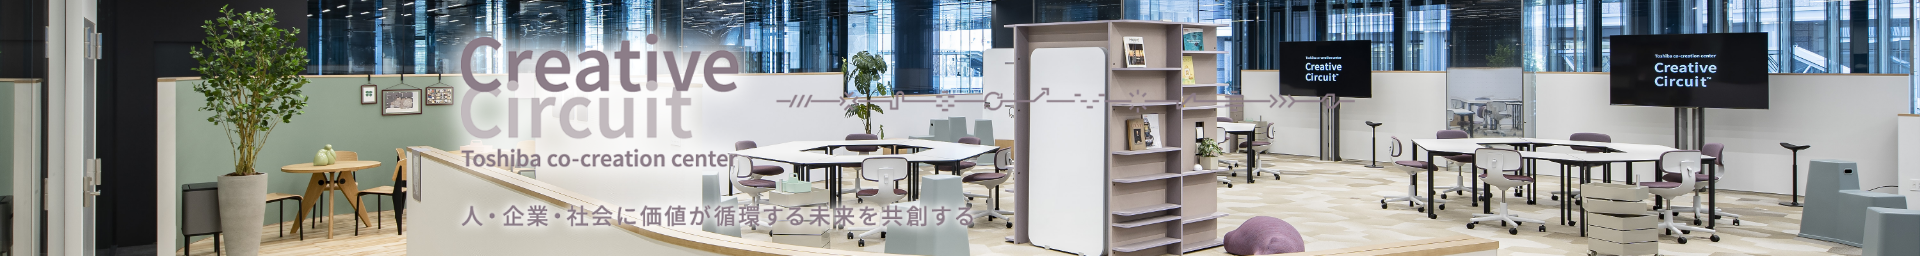 Creative Circuit Toshiba co-creation center